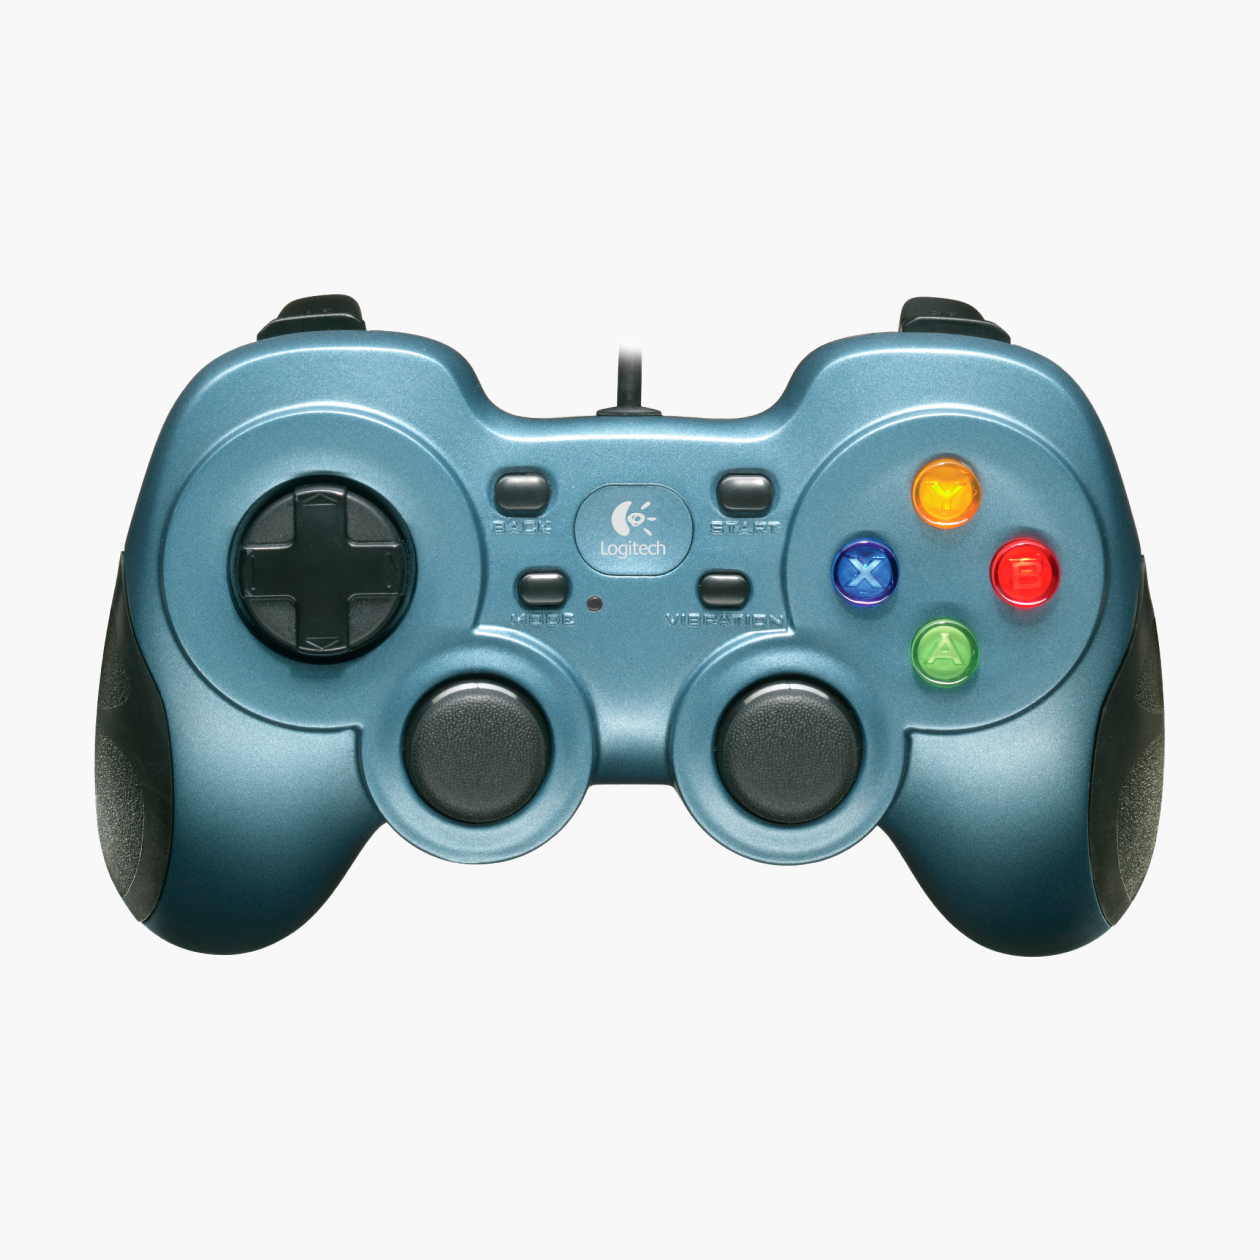 Визуально Logitech F510 похож на DualShock. Отличается разве что наименование клавиш: вместо треугольника, круга, креста и квадрата — буквы Y, B, A, X, как на геймпадах Xbox